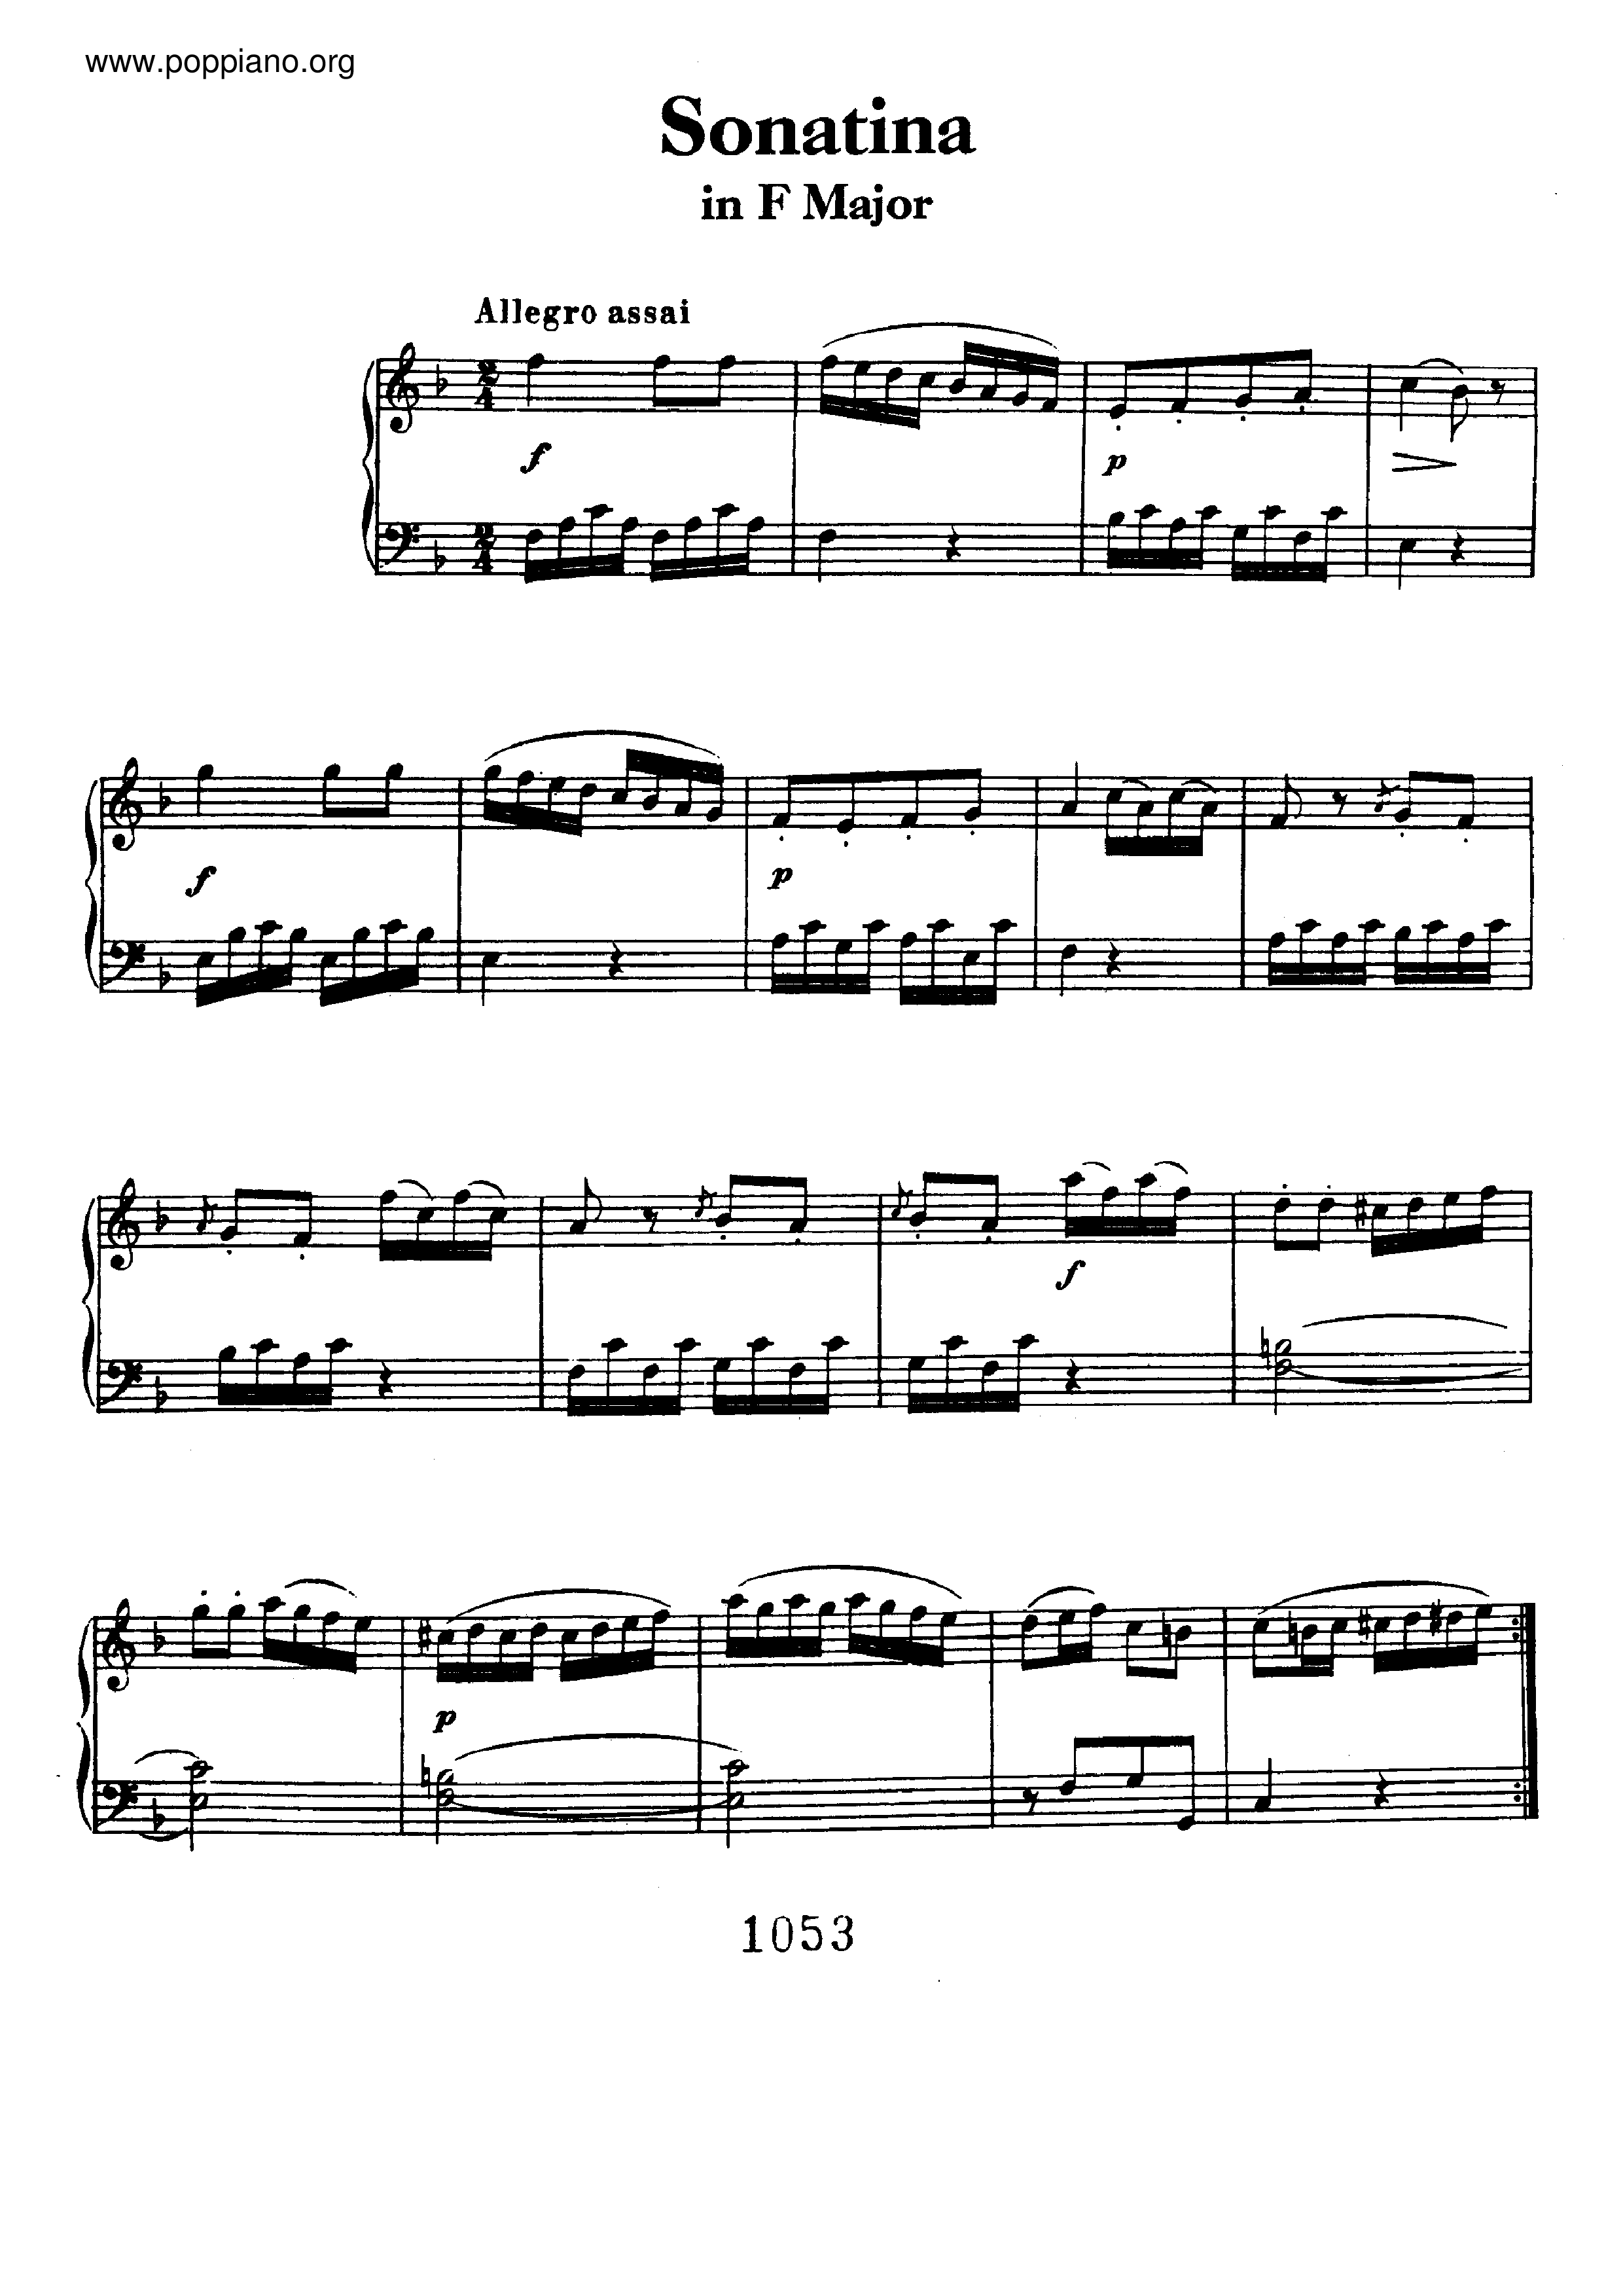 Sonatina in F major AnH 5 Score